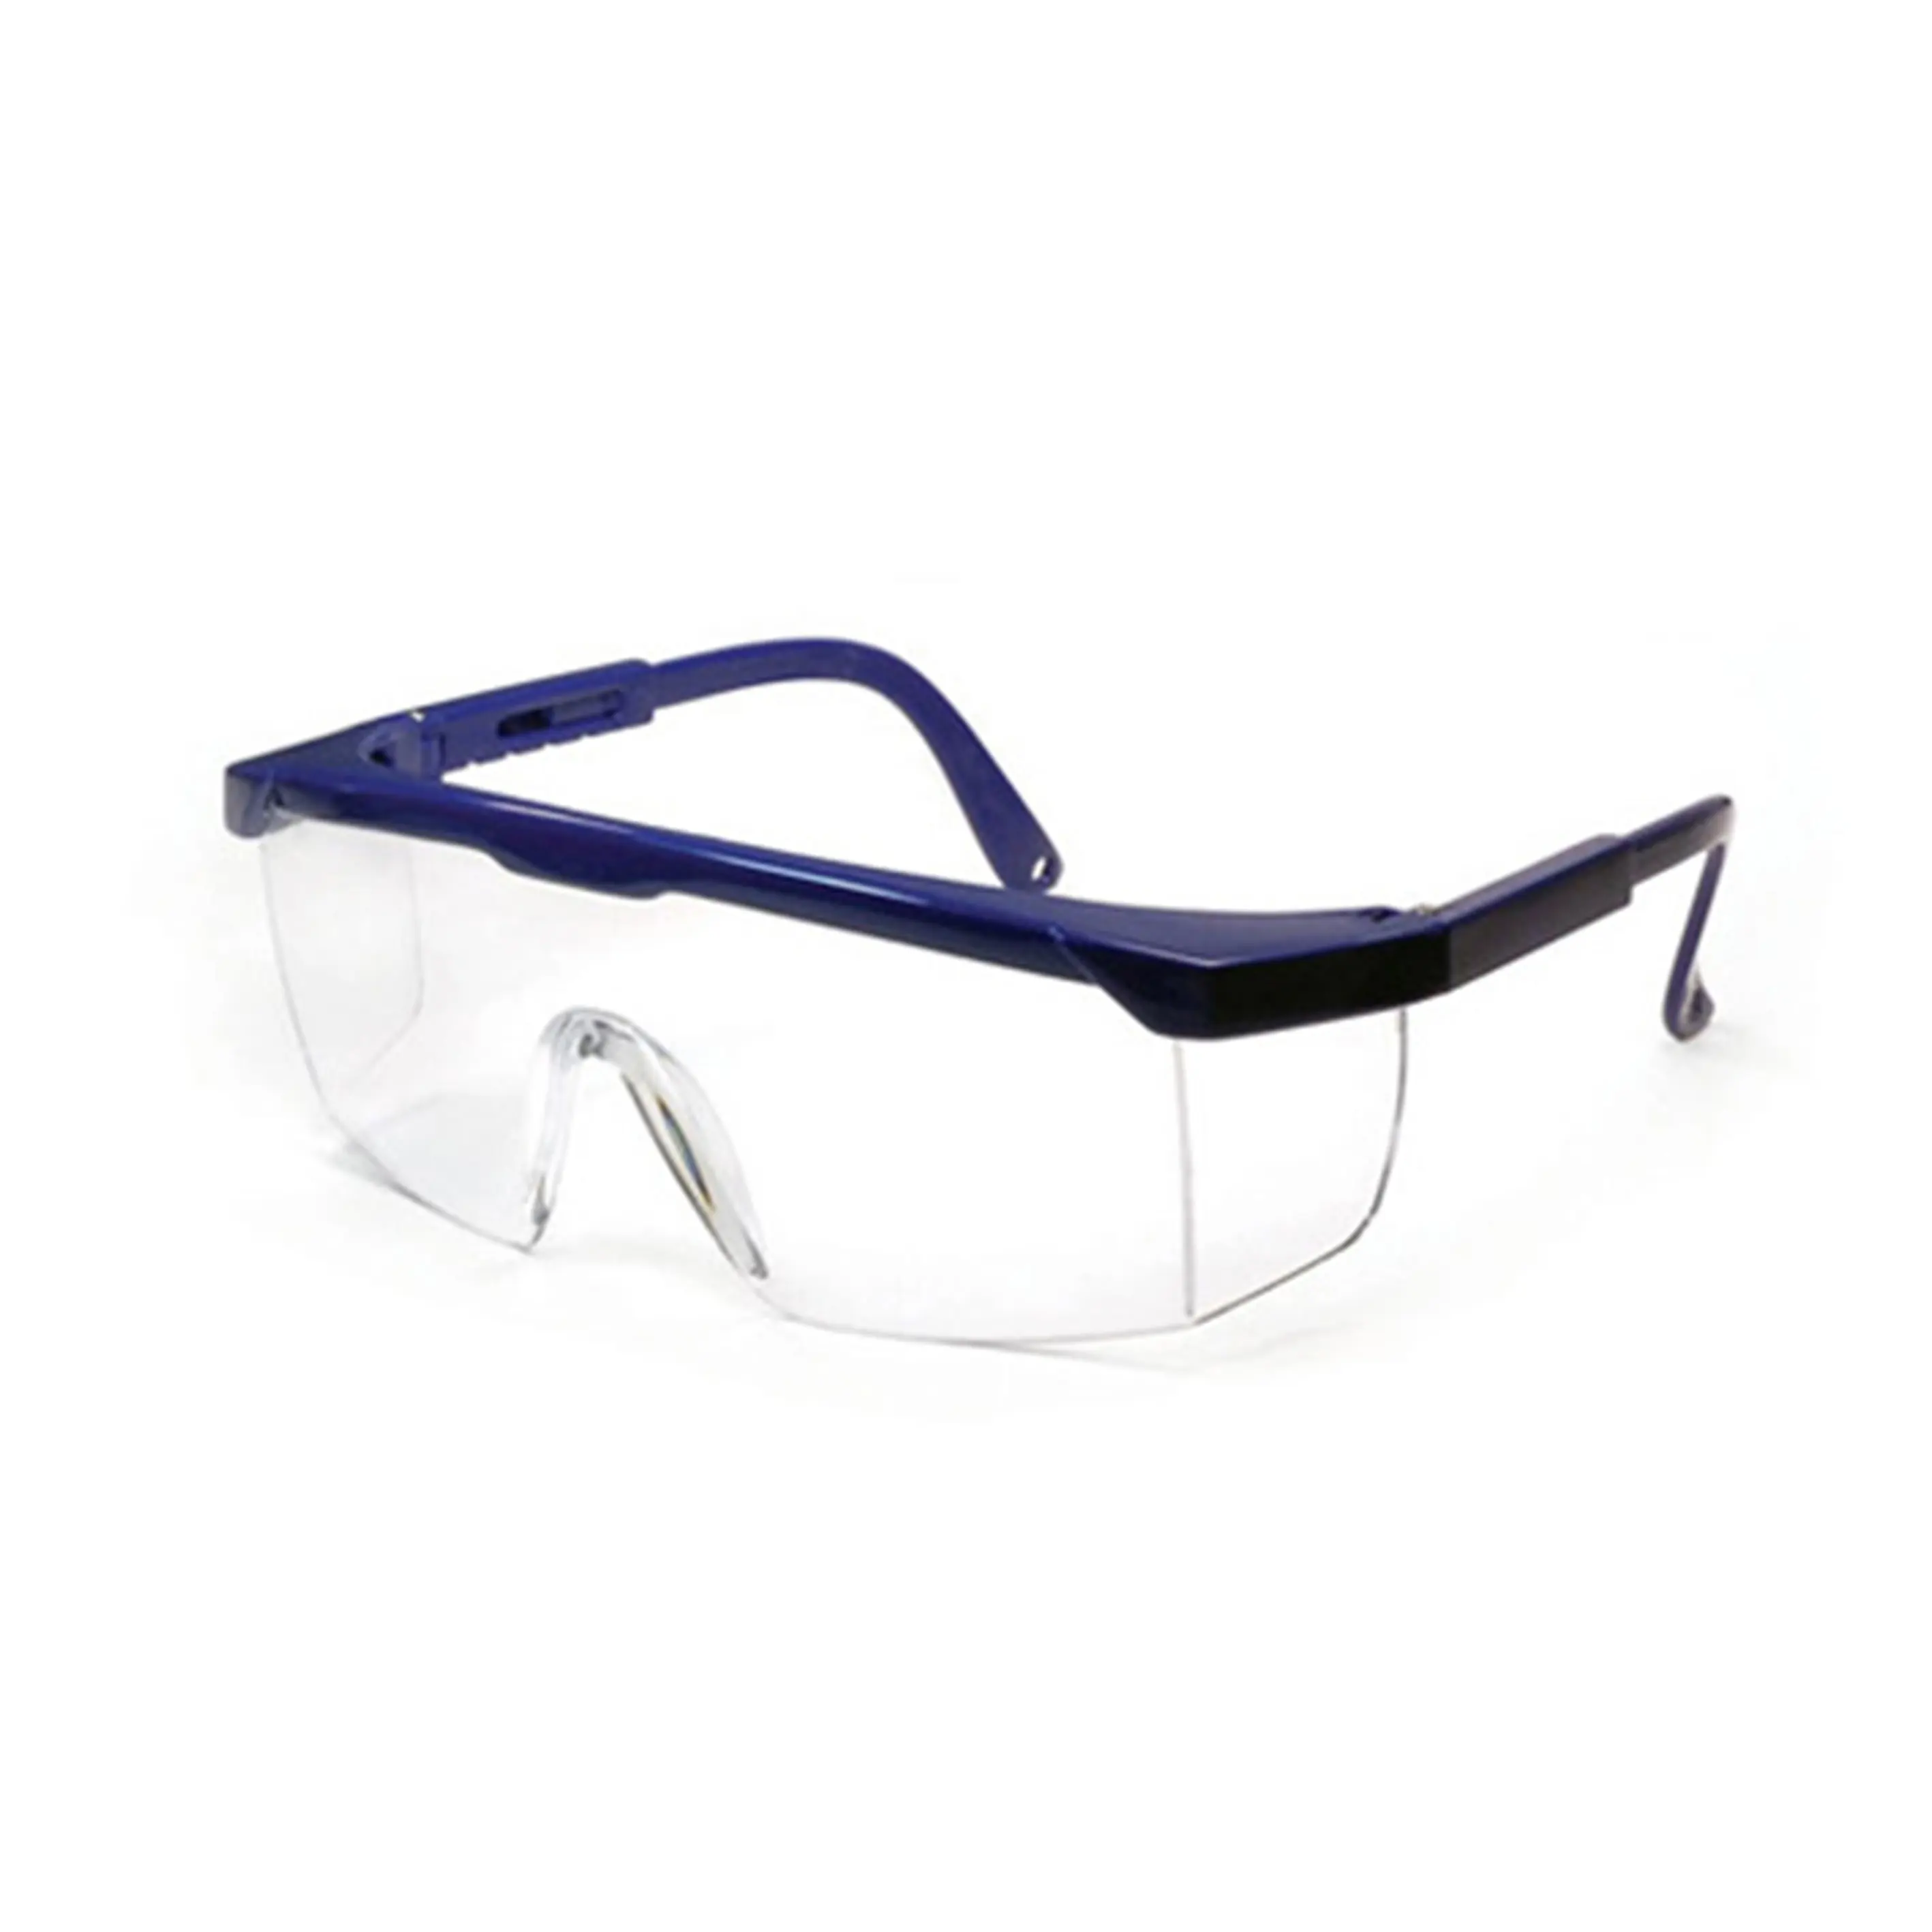 SG1001 משקפי בטיחות נגד פגיעה משקפי עבודה מגן צד מגן משקפי בטיחות משקפי ריתוך CE